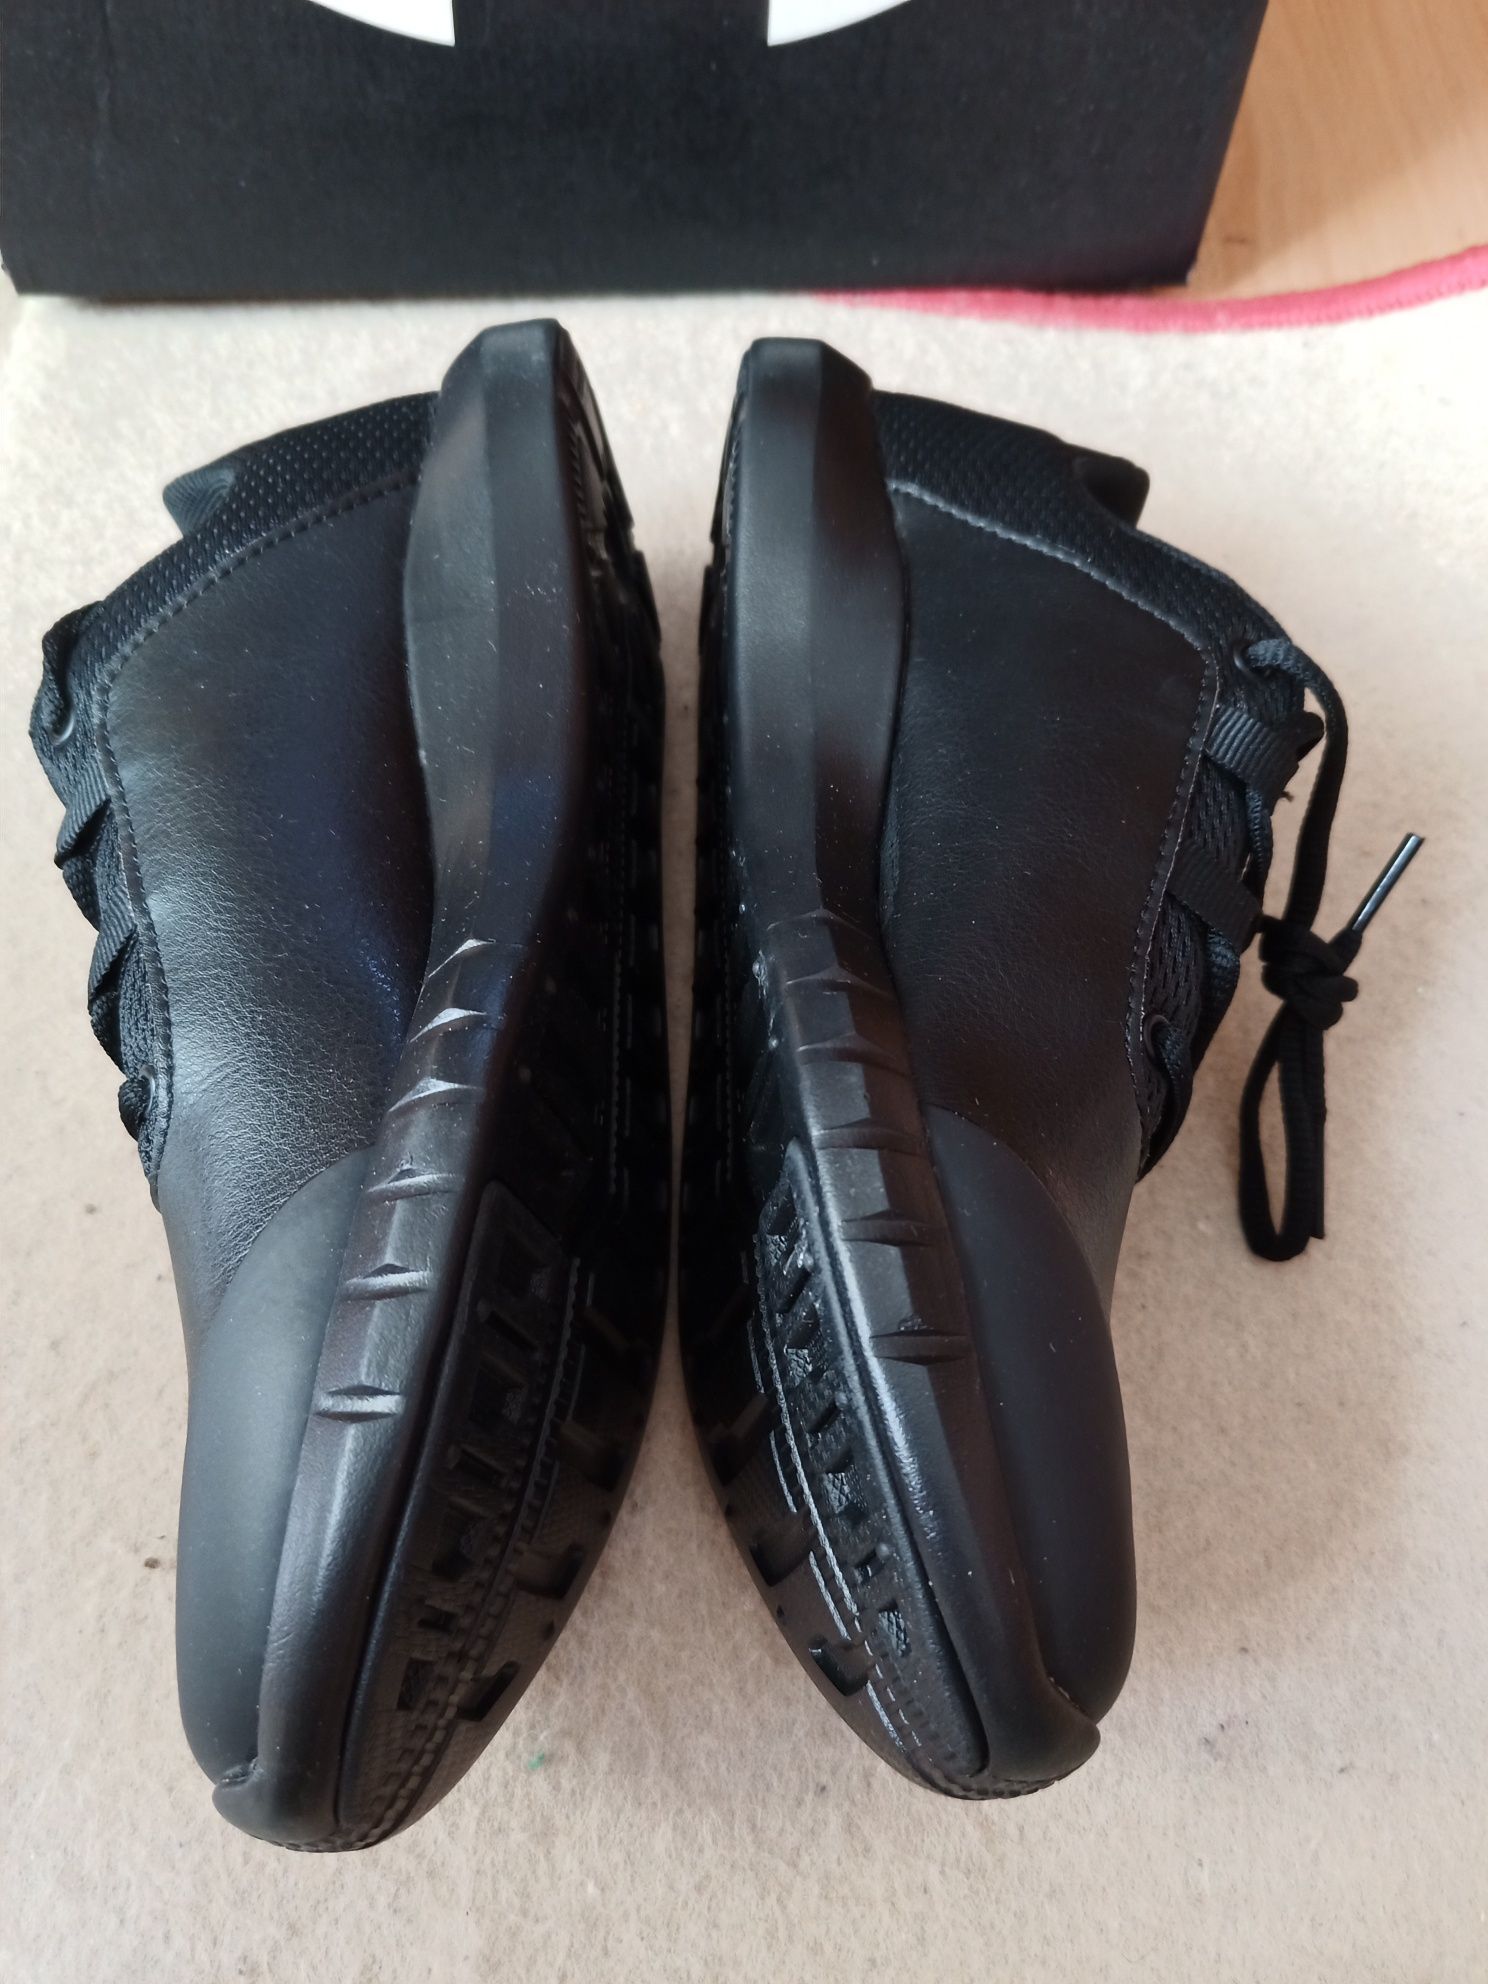 Nowe Sportowe buty under armour 37-38 całe czarne, lekkie, wkładka 24